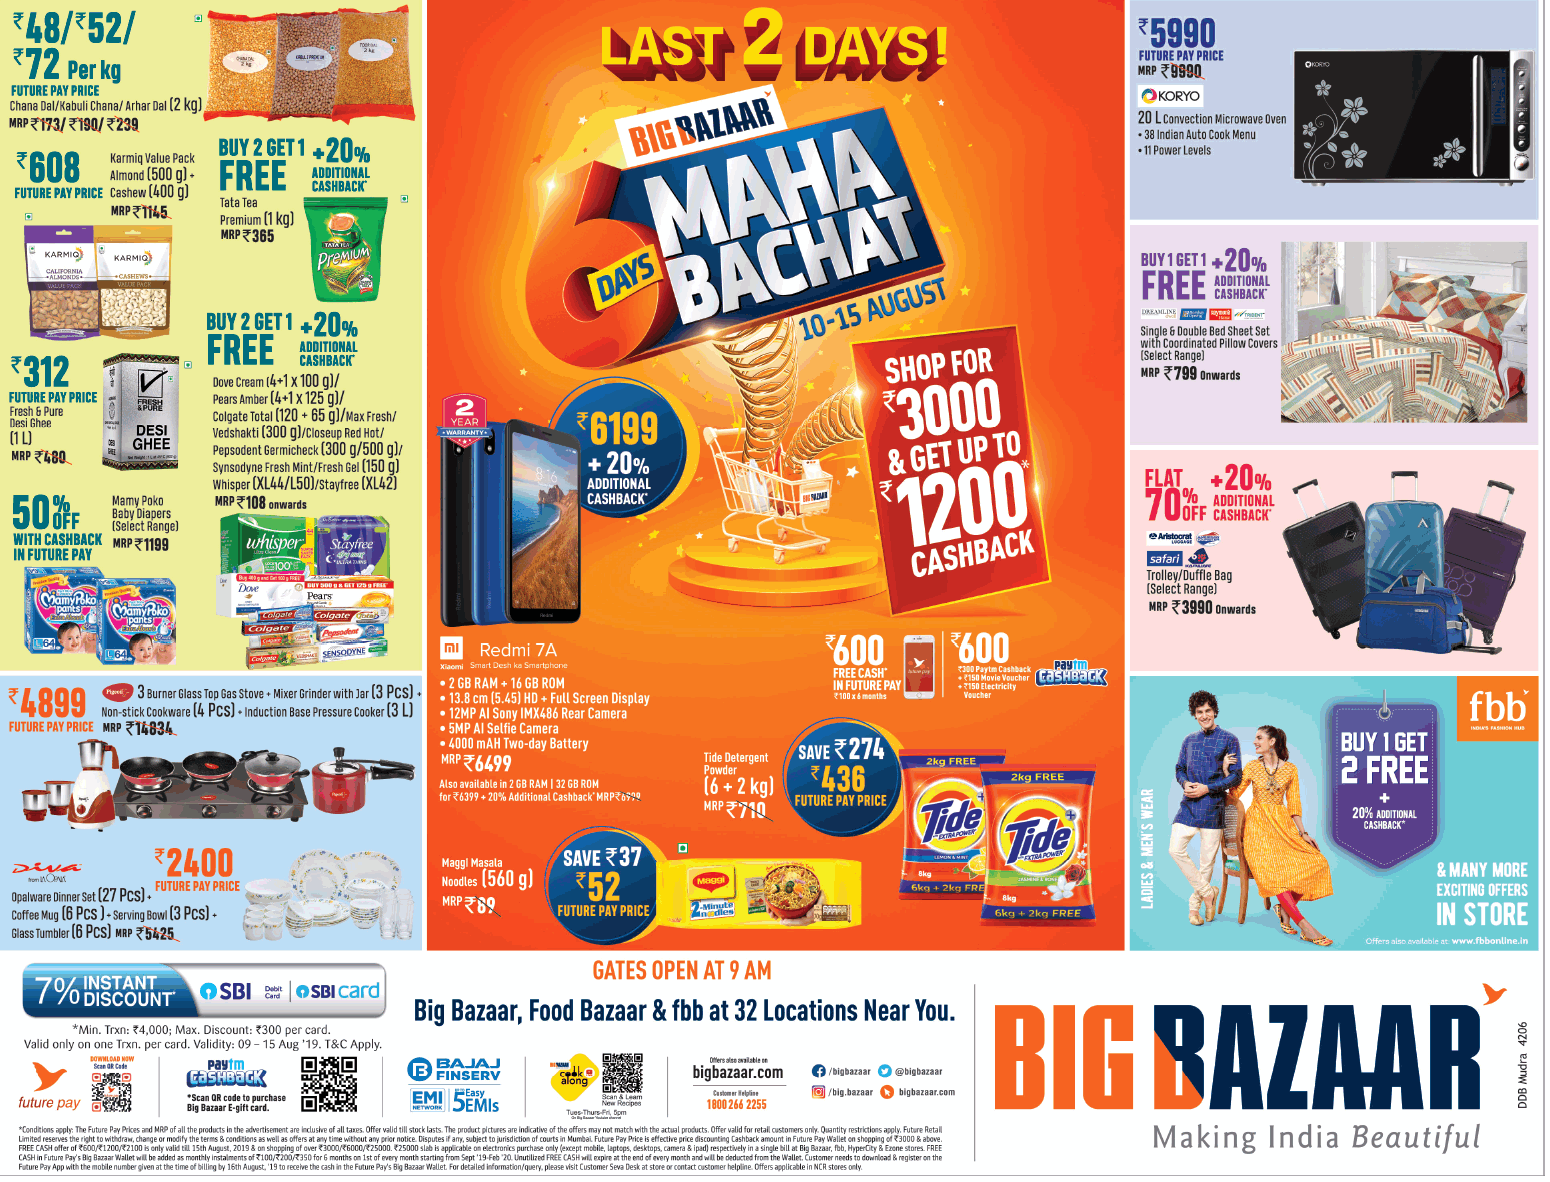 big-bazaar-6-days-maha-bachat-ad-delhi-times-14-08-2019.png